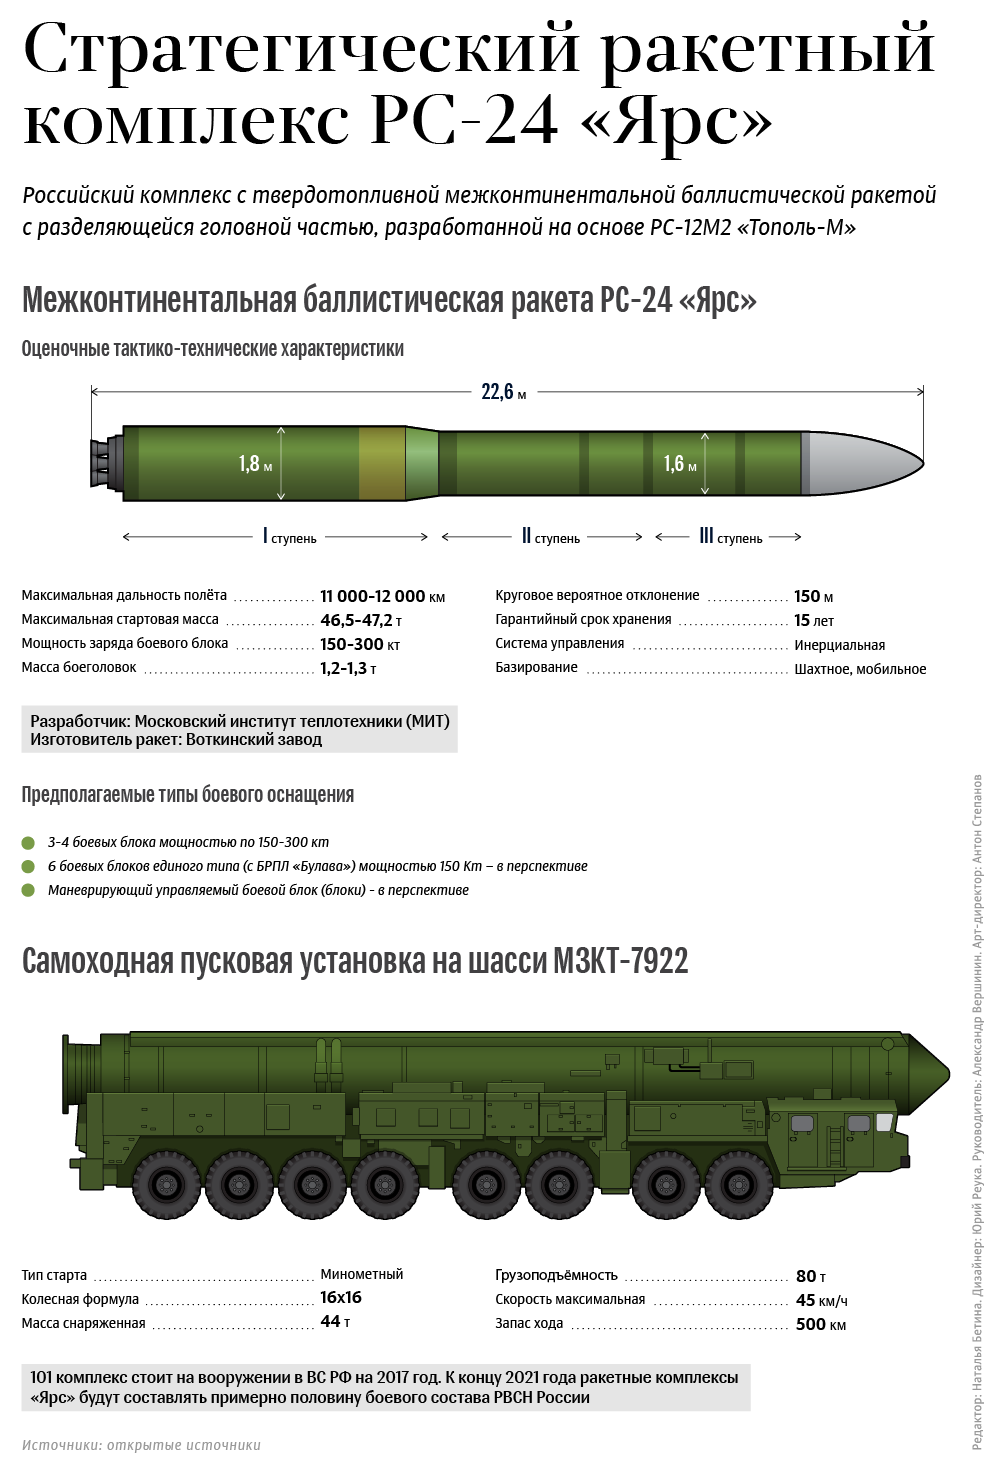 Баллистическая ракета "ярс": фото и характеристики :: syl.ru